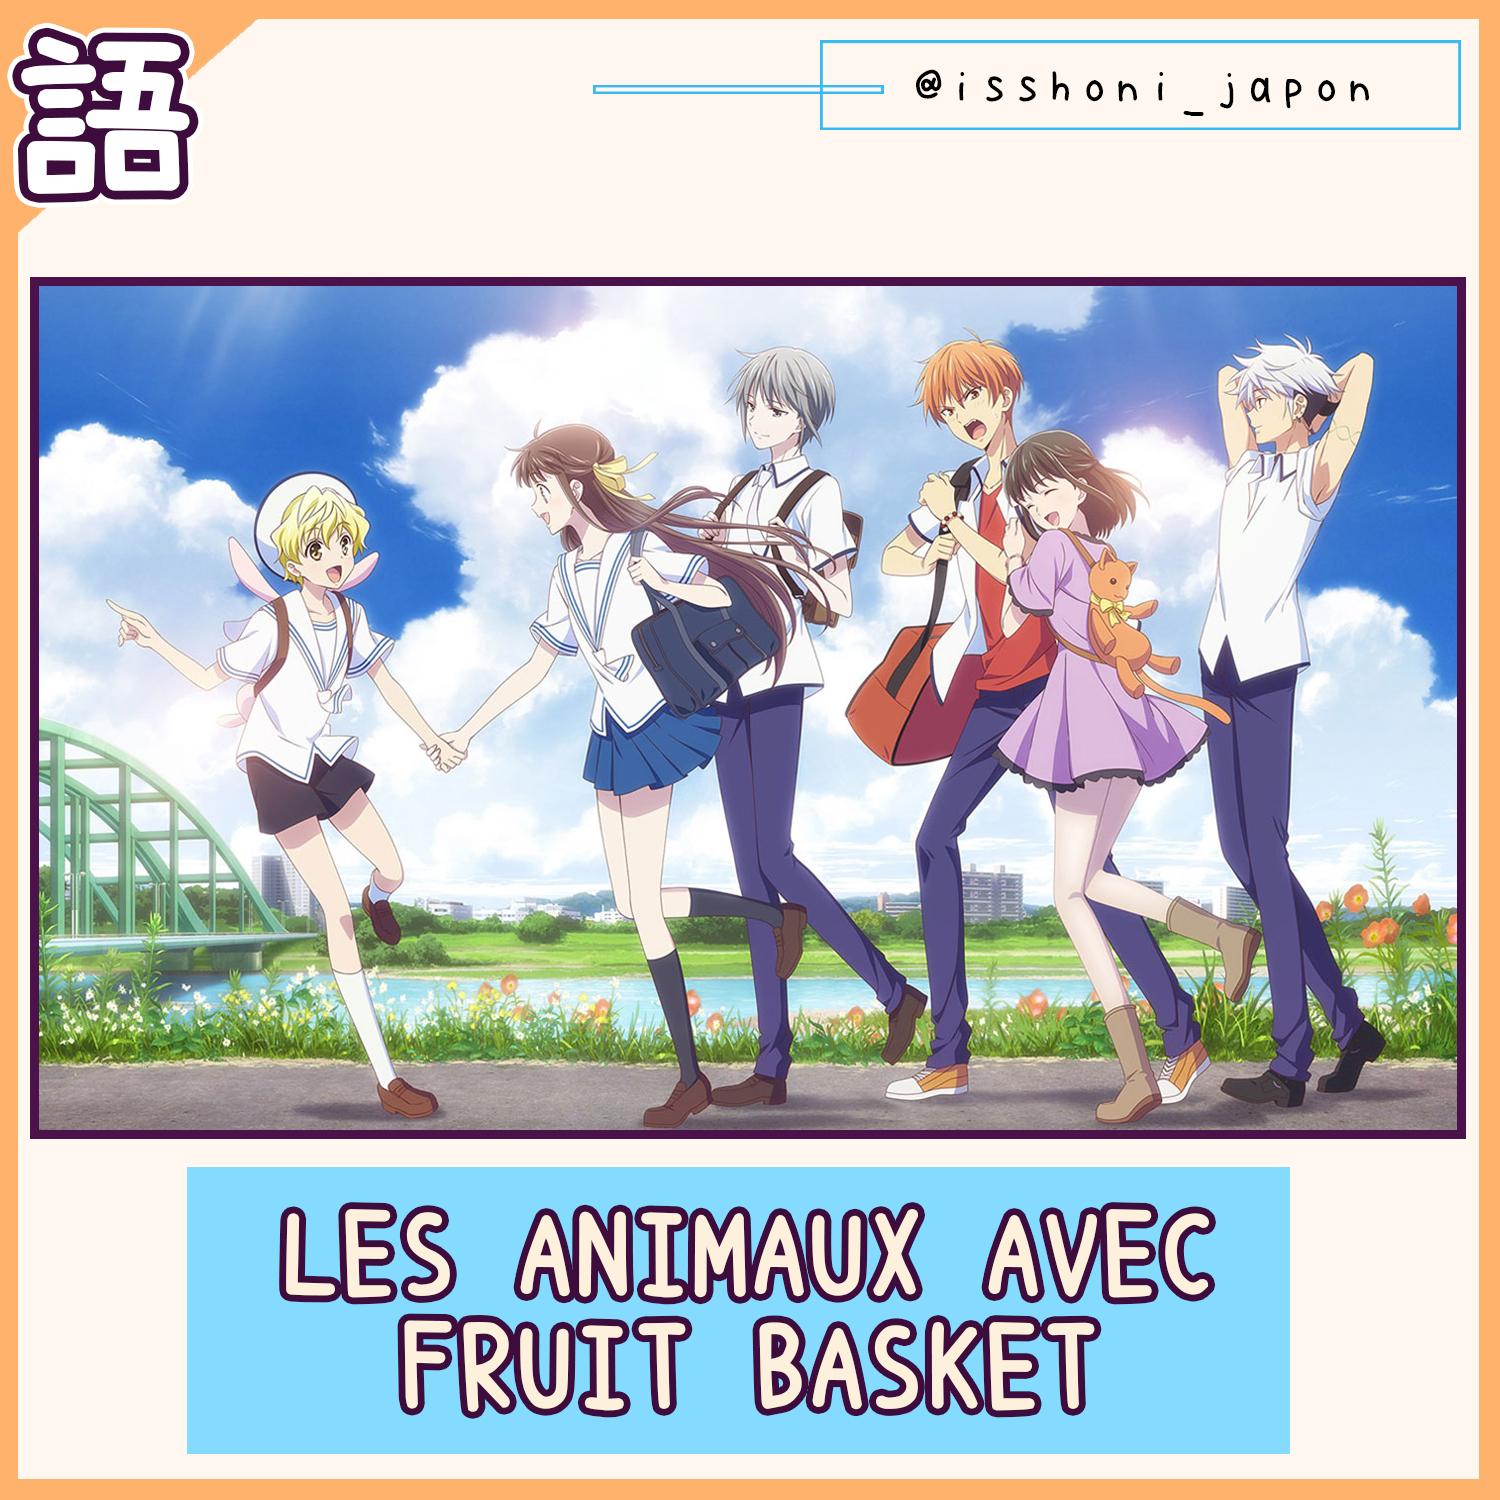 Issho Ni couverture blog animaux en japonais Fruits Basket